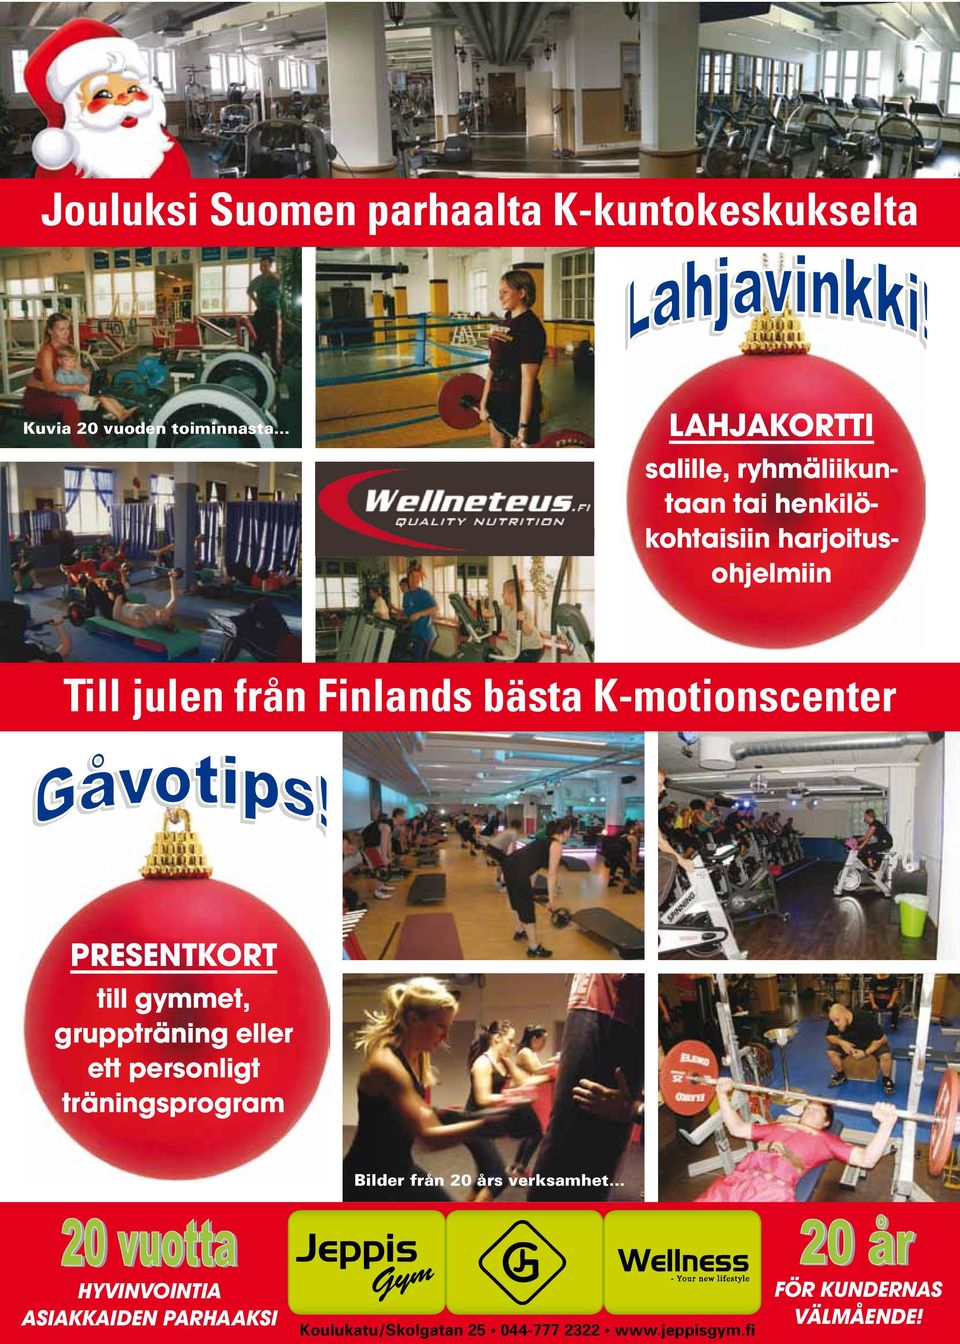 K-motionscenter Till julen från Finlands bästa K-motionscenter PRESENTKORT PRESENTKORT till gymmet, gruppträning eller eller ett personligt ett personligt